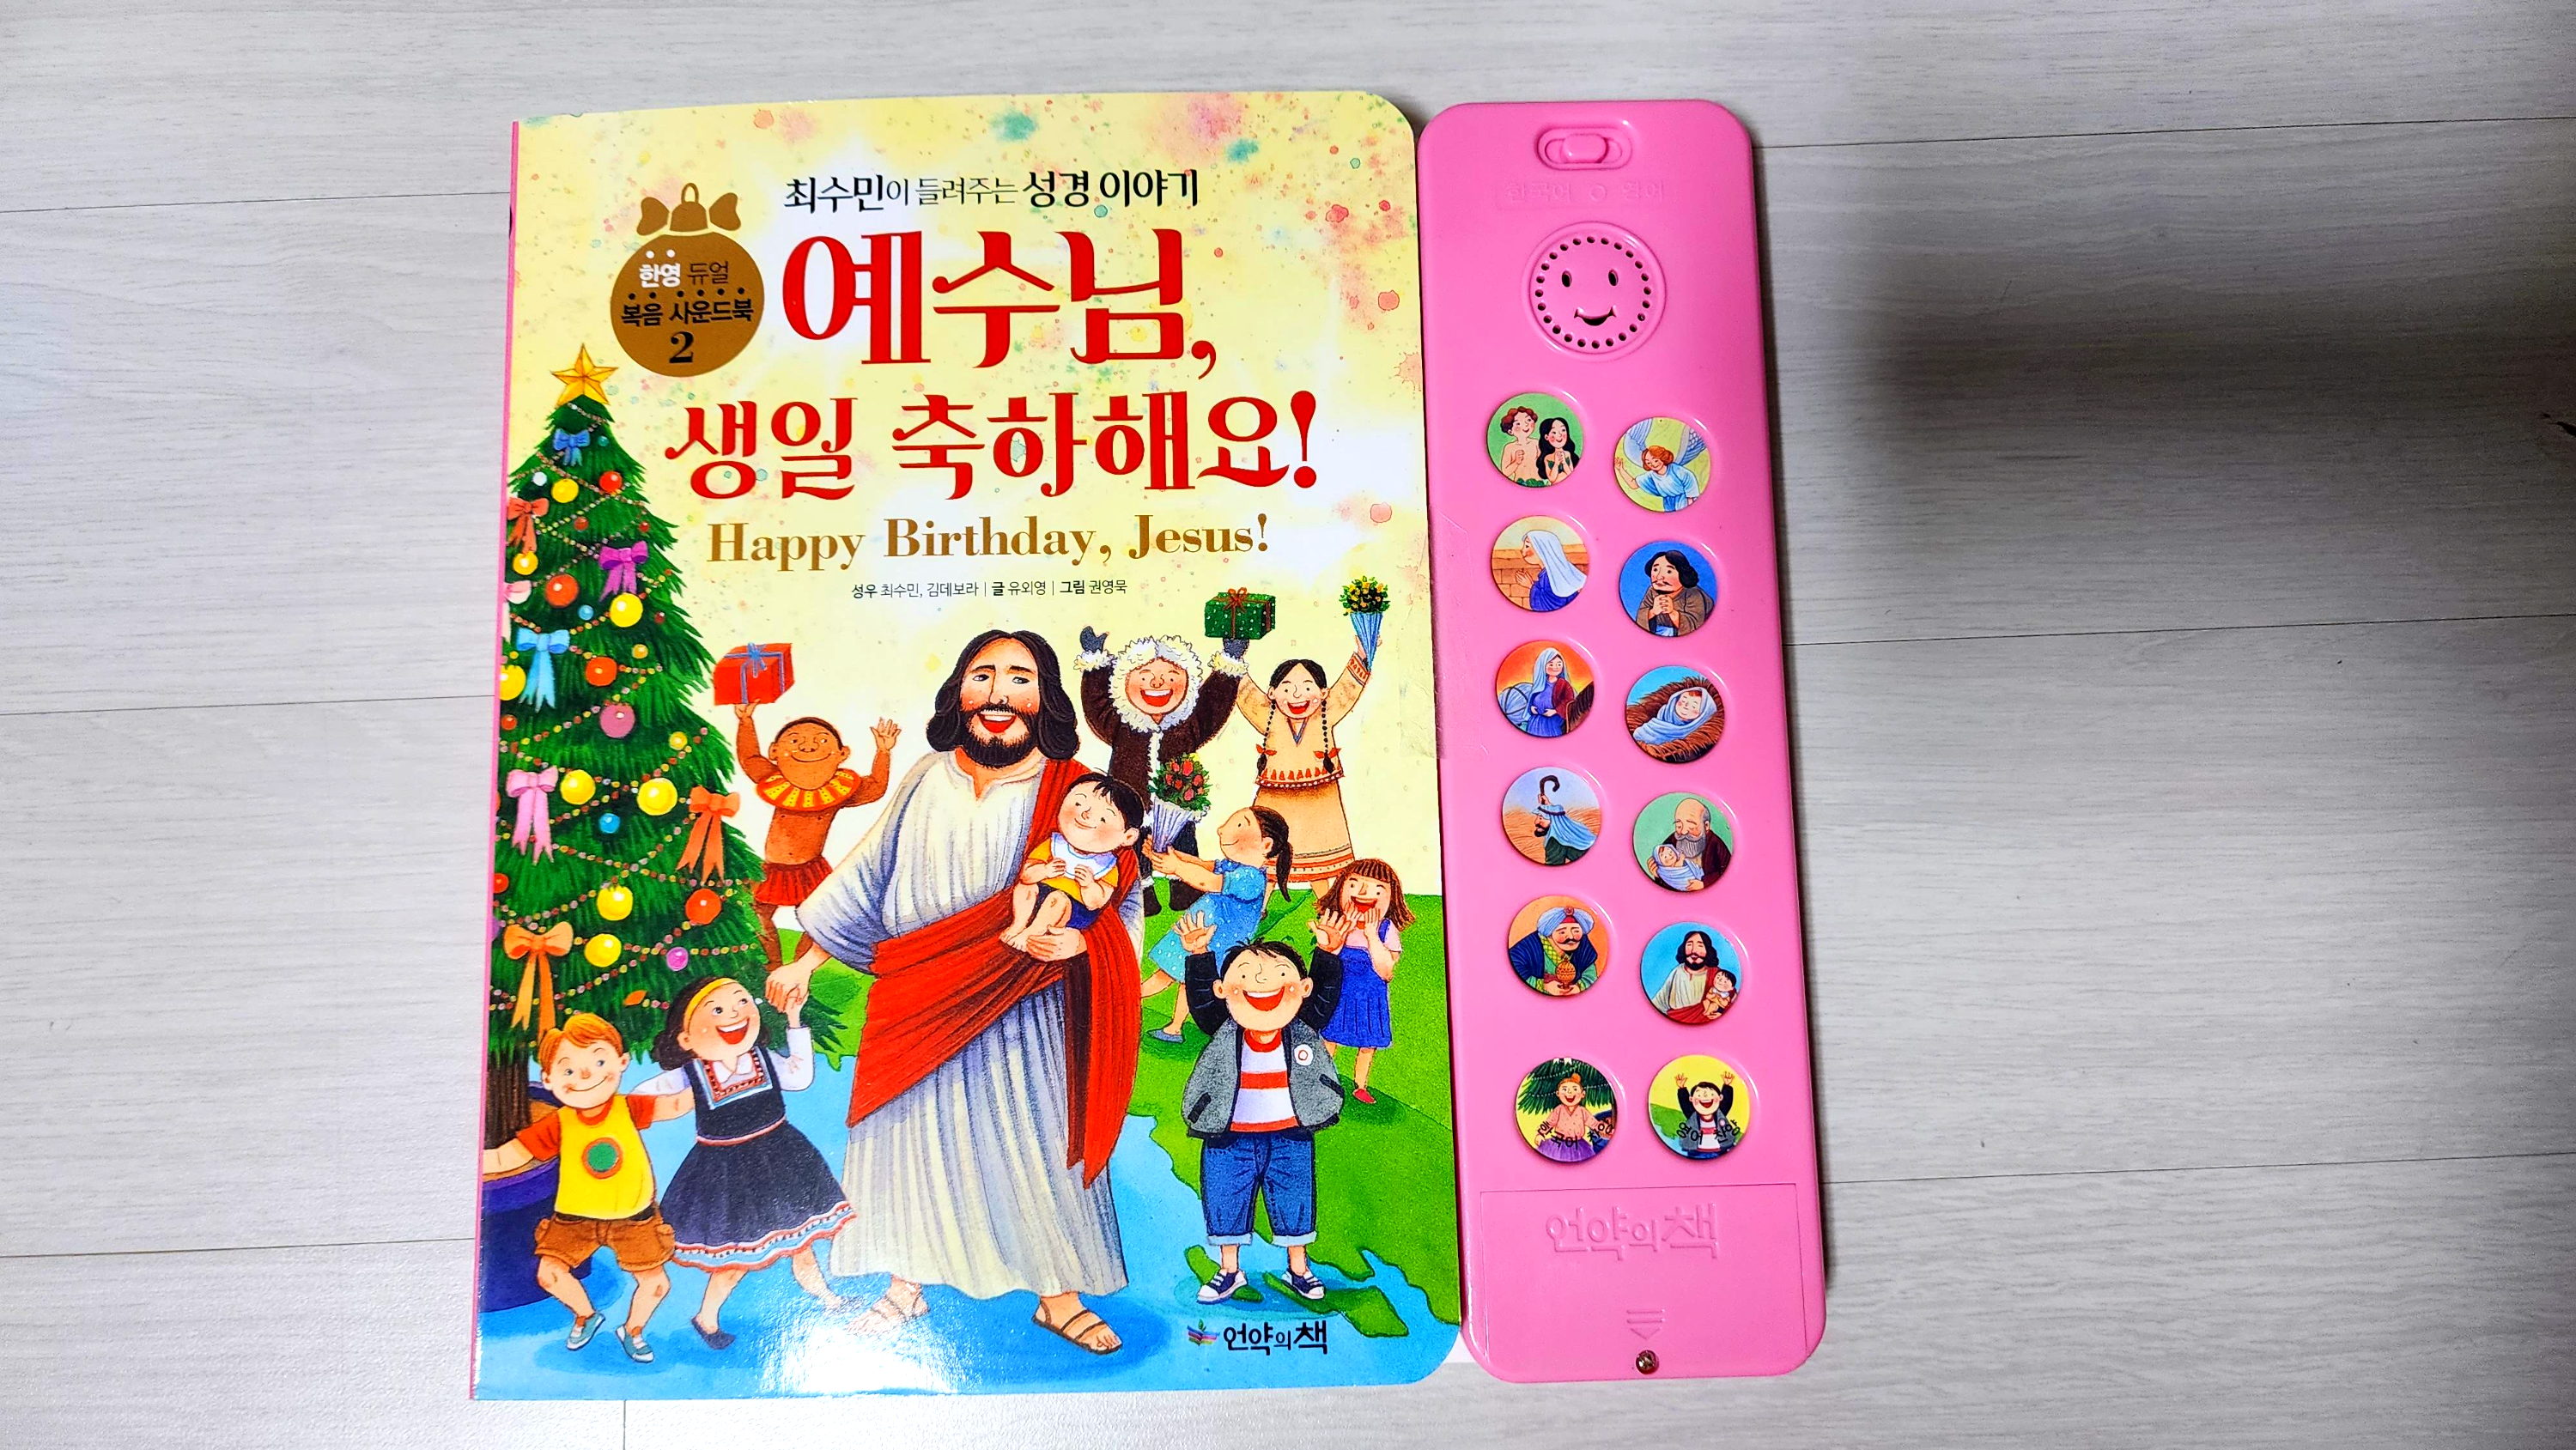 어린이 성경 한영 사운드북 추천 - 예수님 생일 축하해요 1